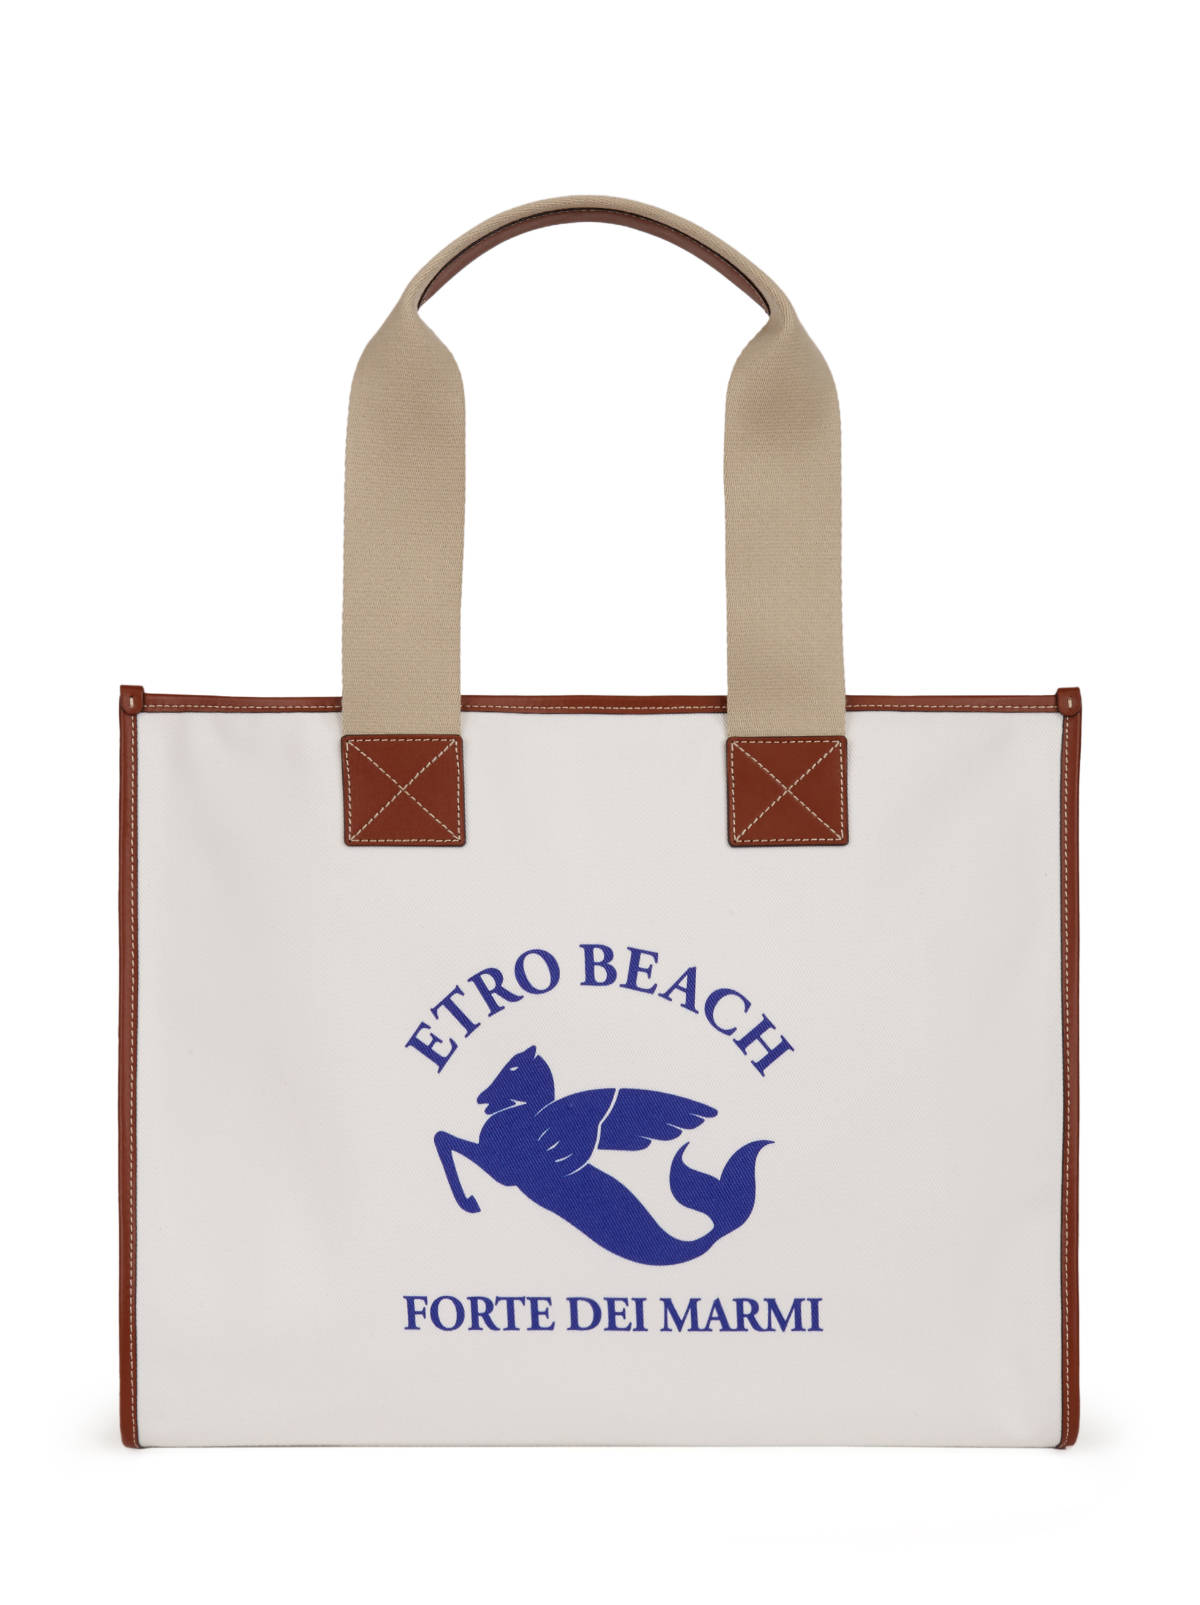 New Etro Beach Forte Dei Marmi Capsule Collection